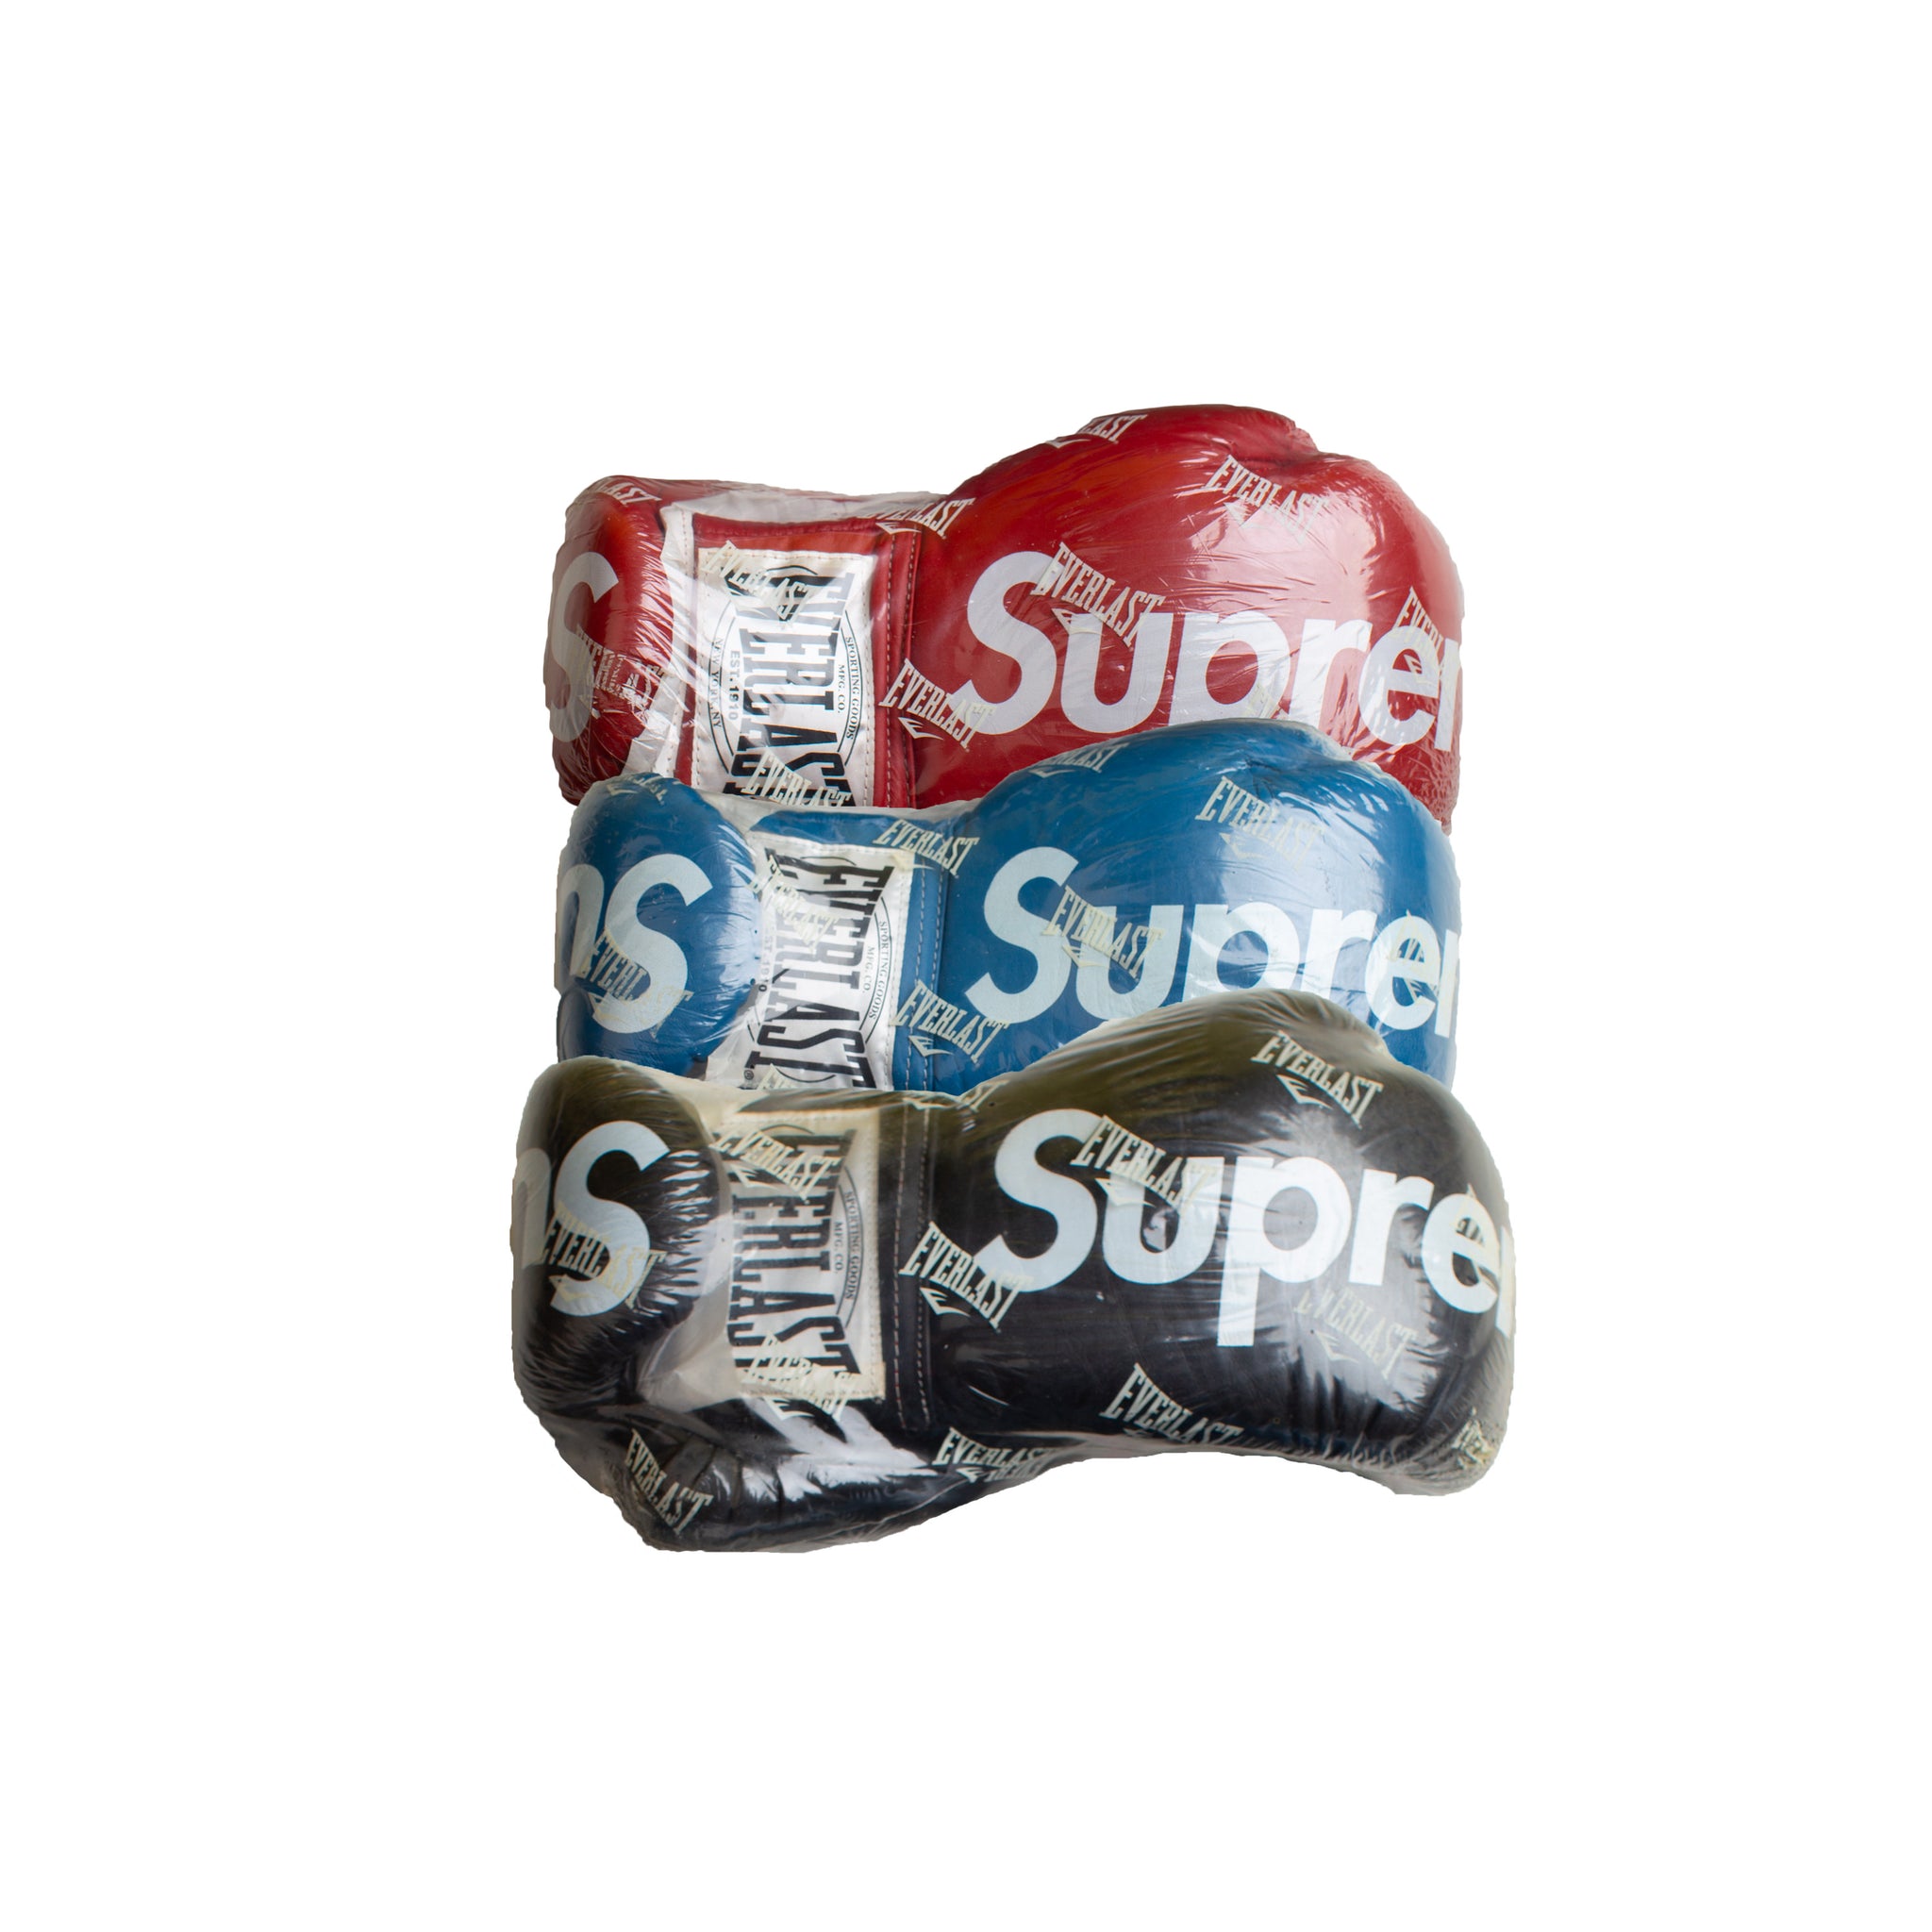 Supreme Boxing Gloves (Set of 3)